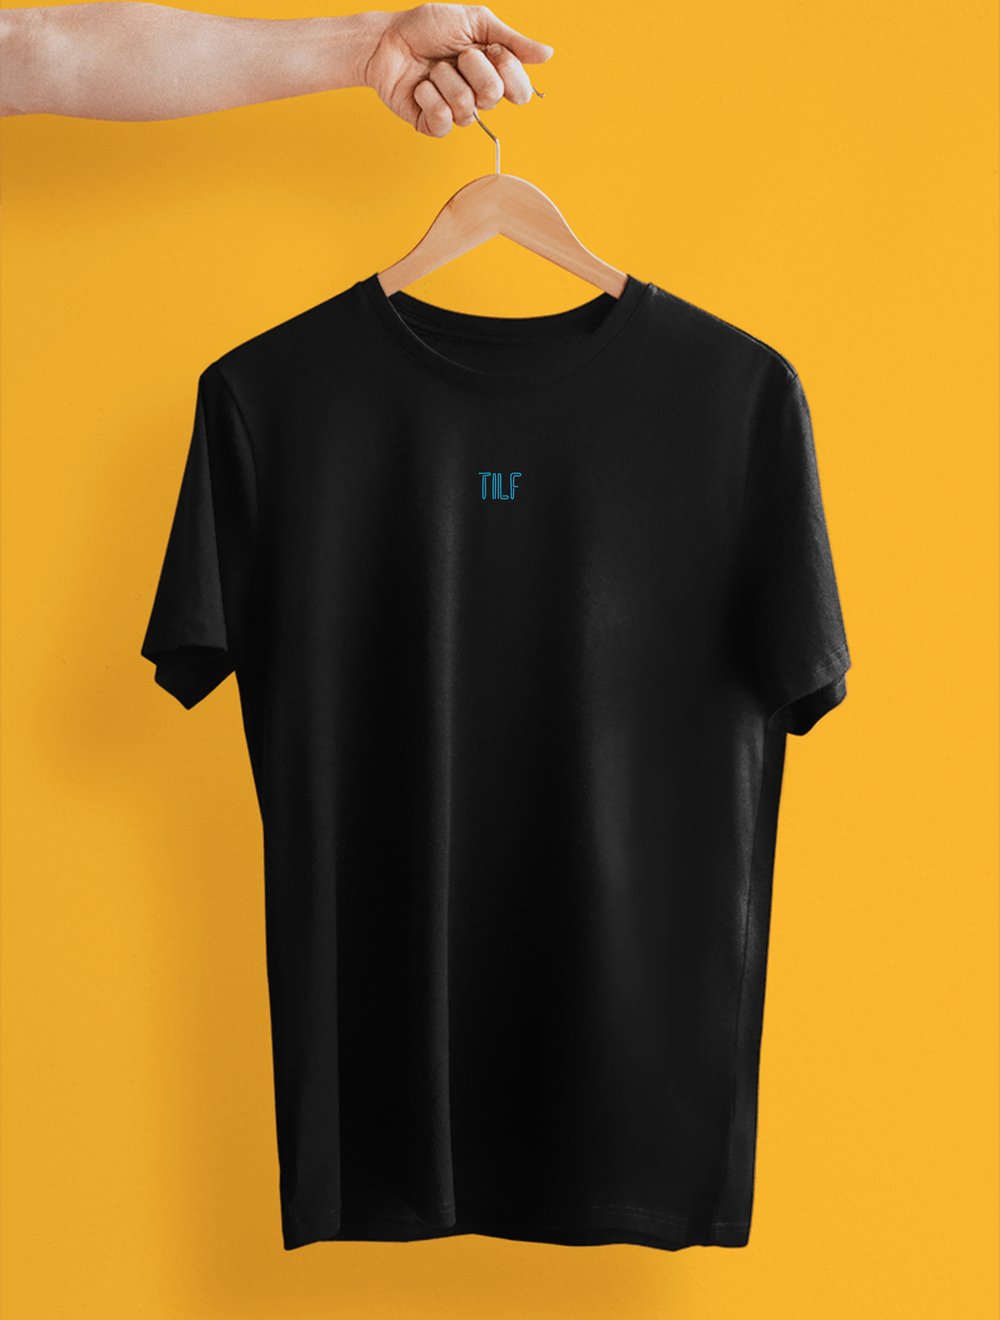 TILF T-Shirt 5881947